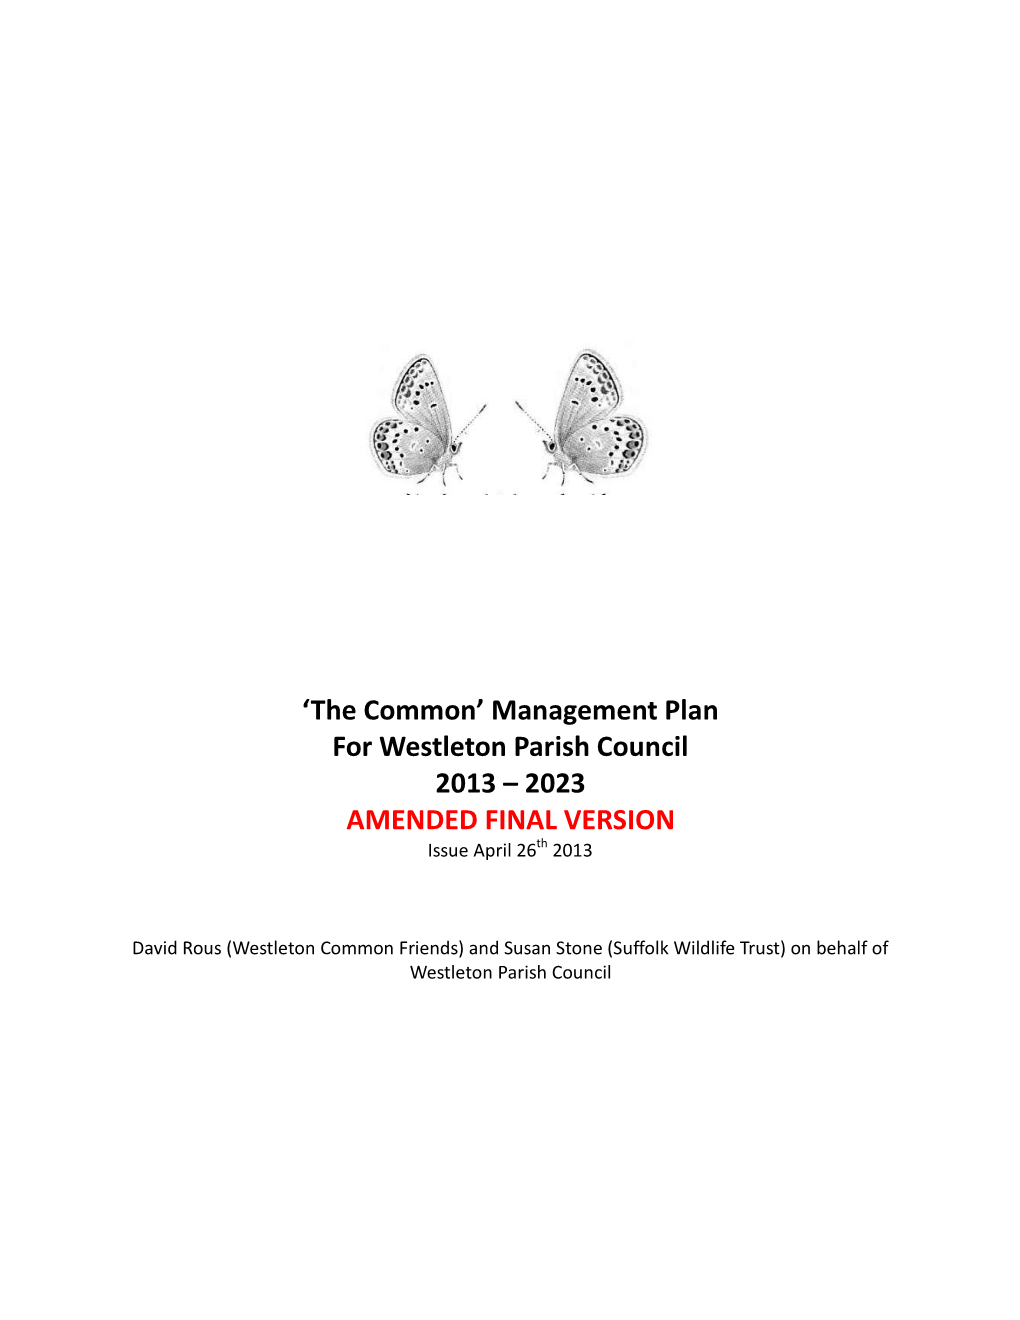 'The Common' Management Plan for Westleton Parish Council 2013